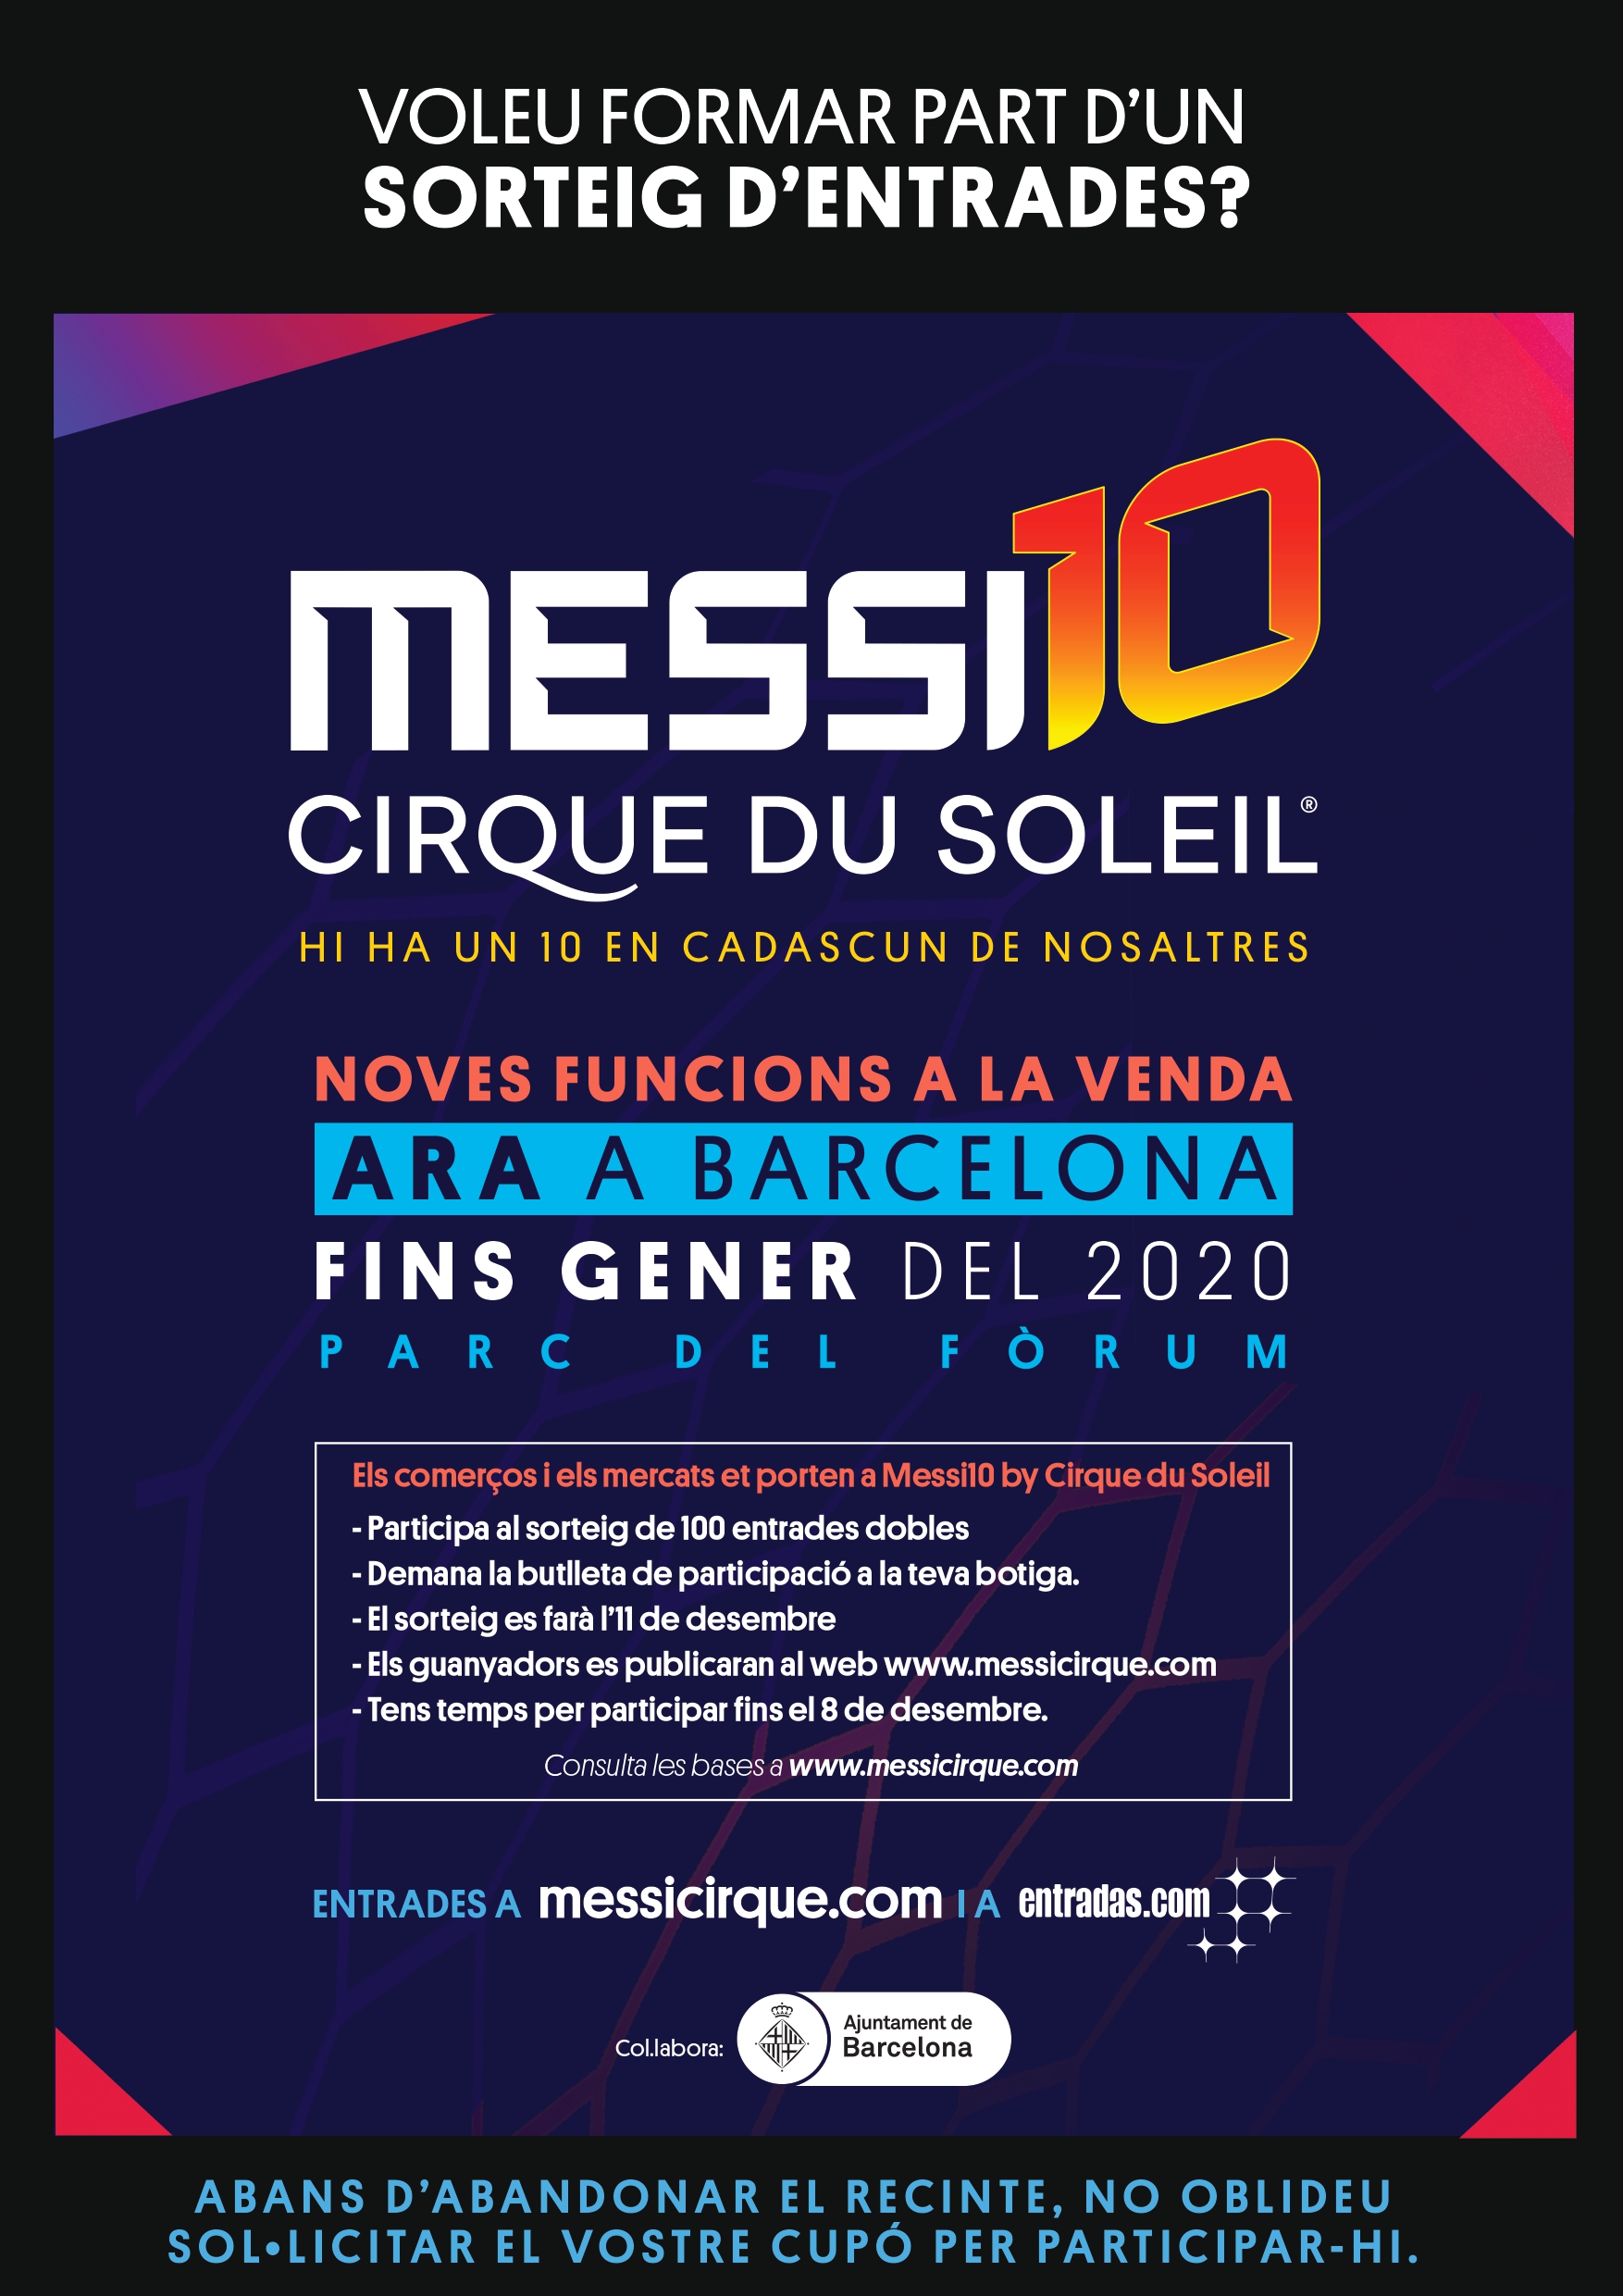 Guanya una entrada doble per veure Messi10 al Cirque du Soleil!